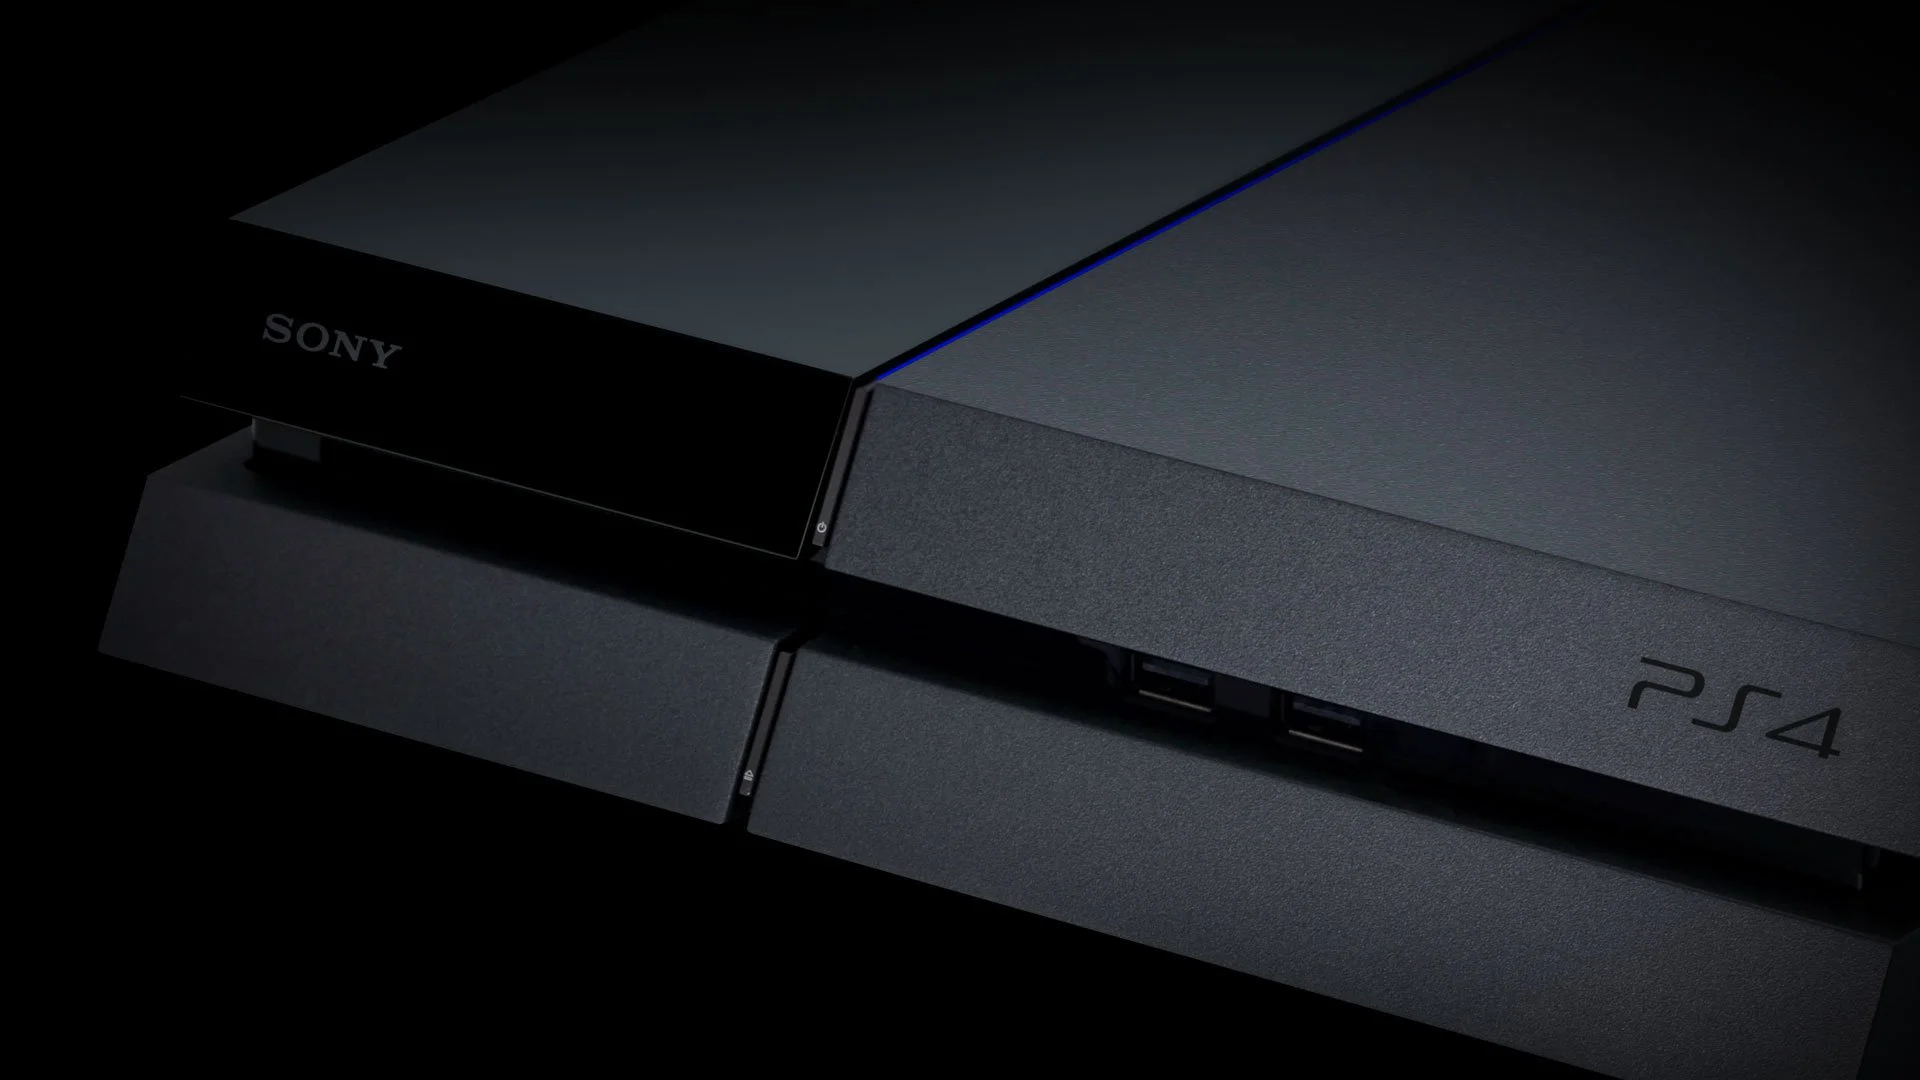 Sony открыла седьмое ядро PS4 CPU, производительность в играх вырастет - фото 1